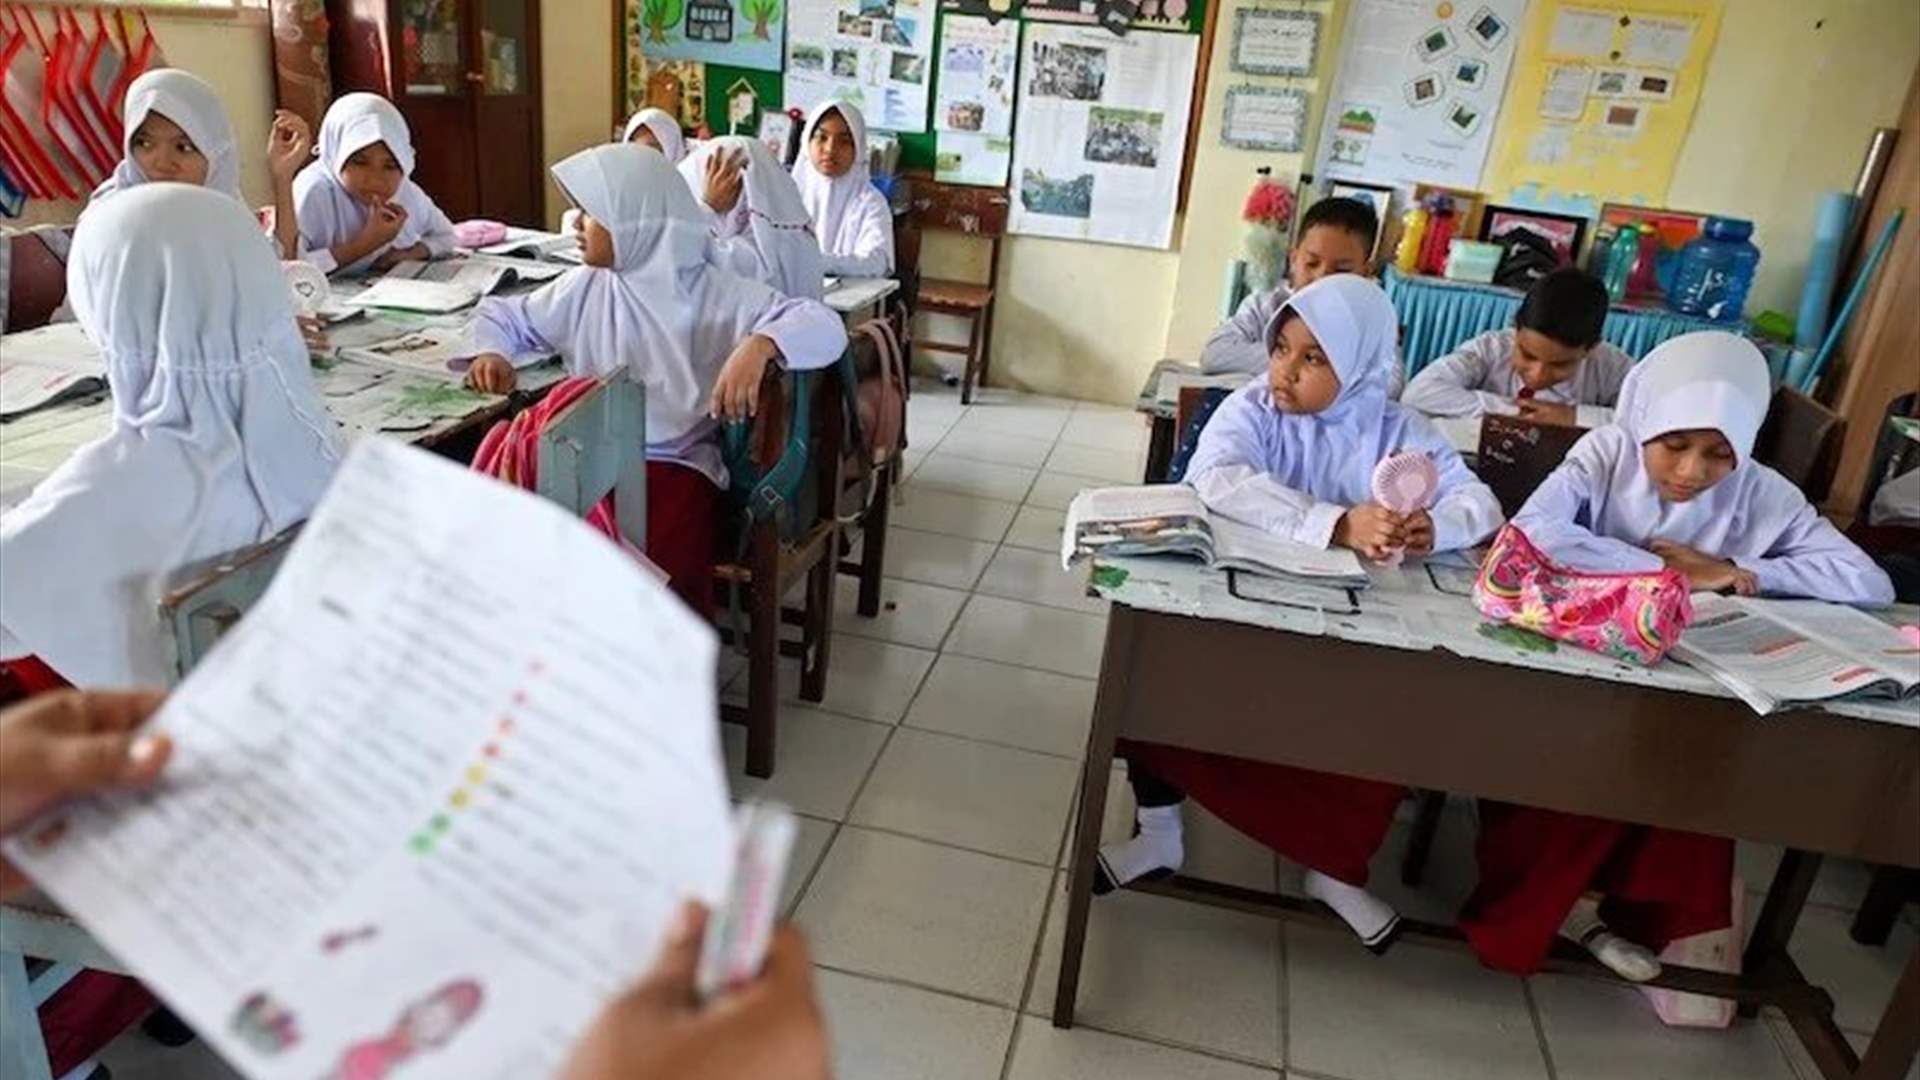 قص شعر 14 تلميذة اندونيسية بسبب عدم ارتداء الحجاب بشكل صحيح! 